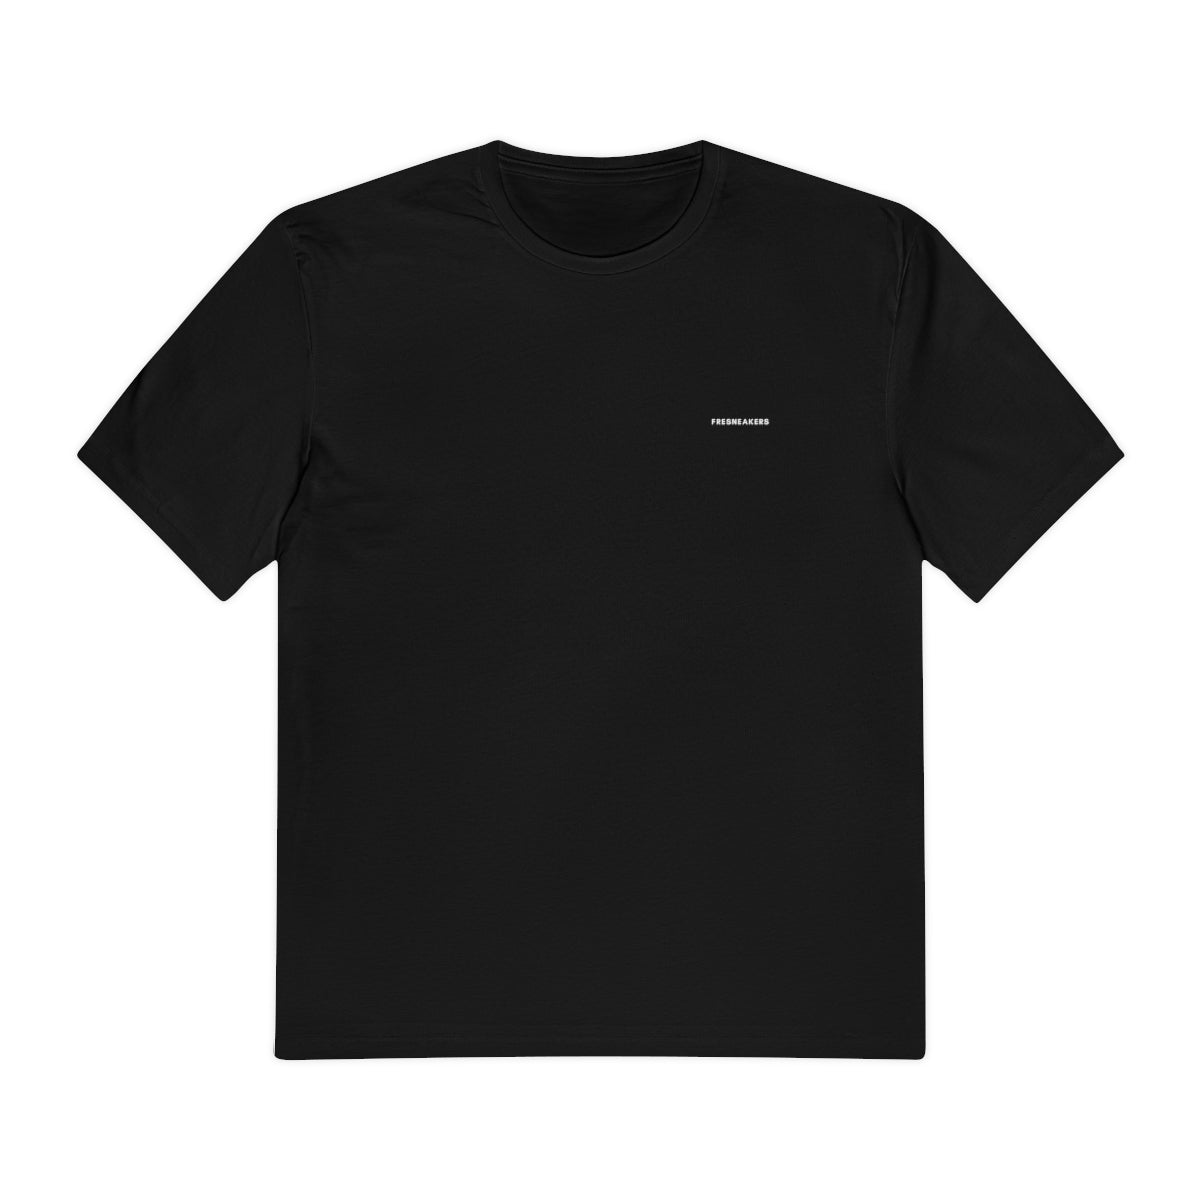 Black Dazed Graphic Tshirt